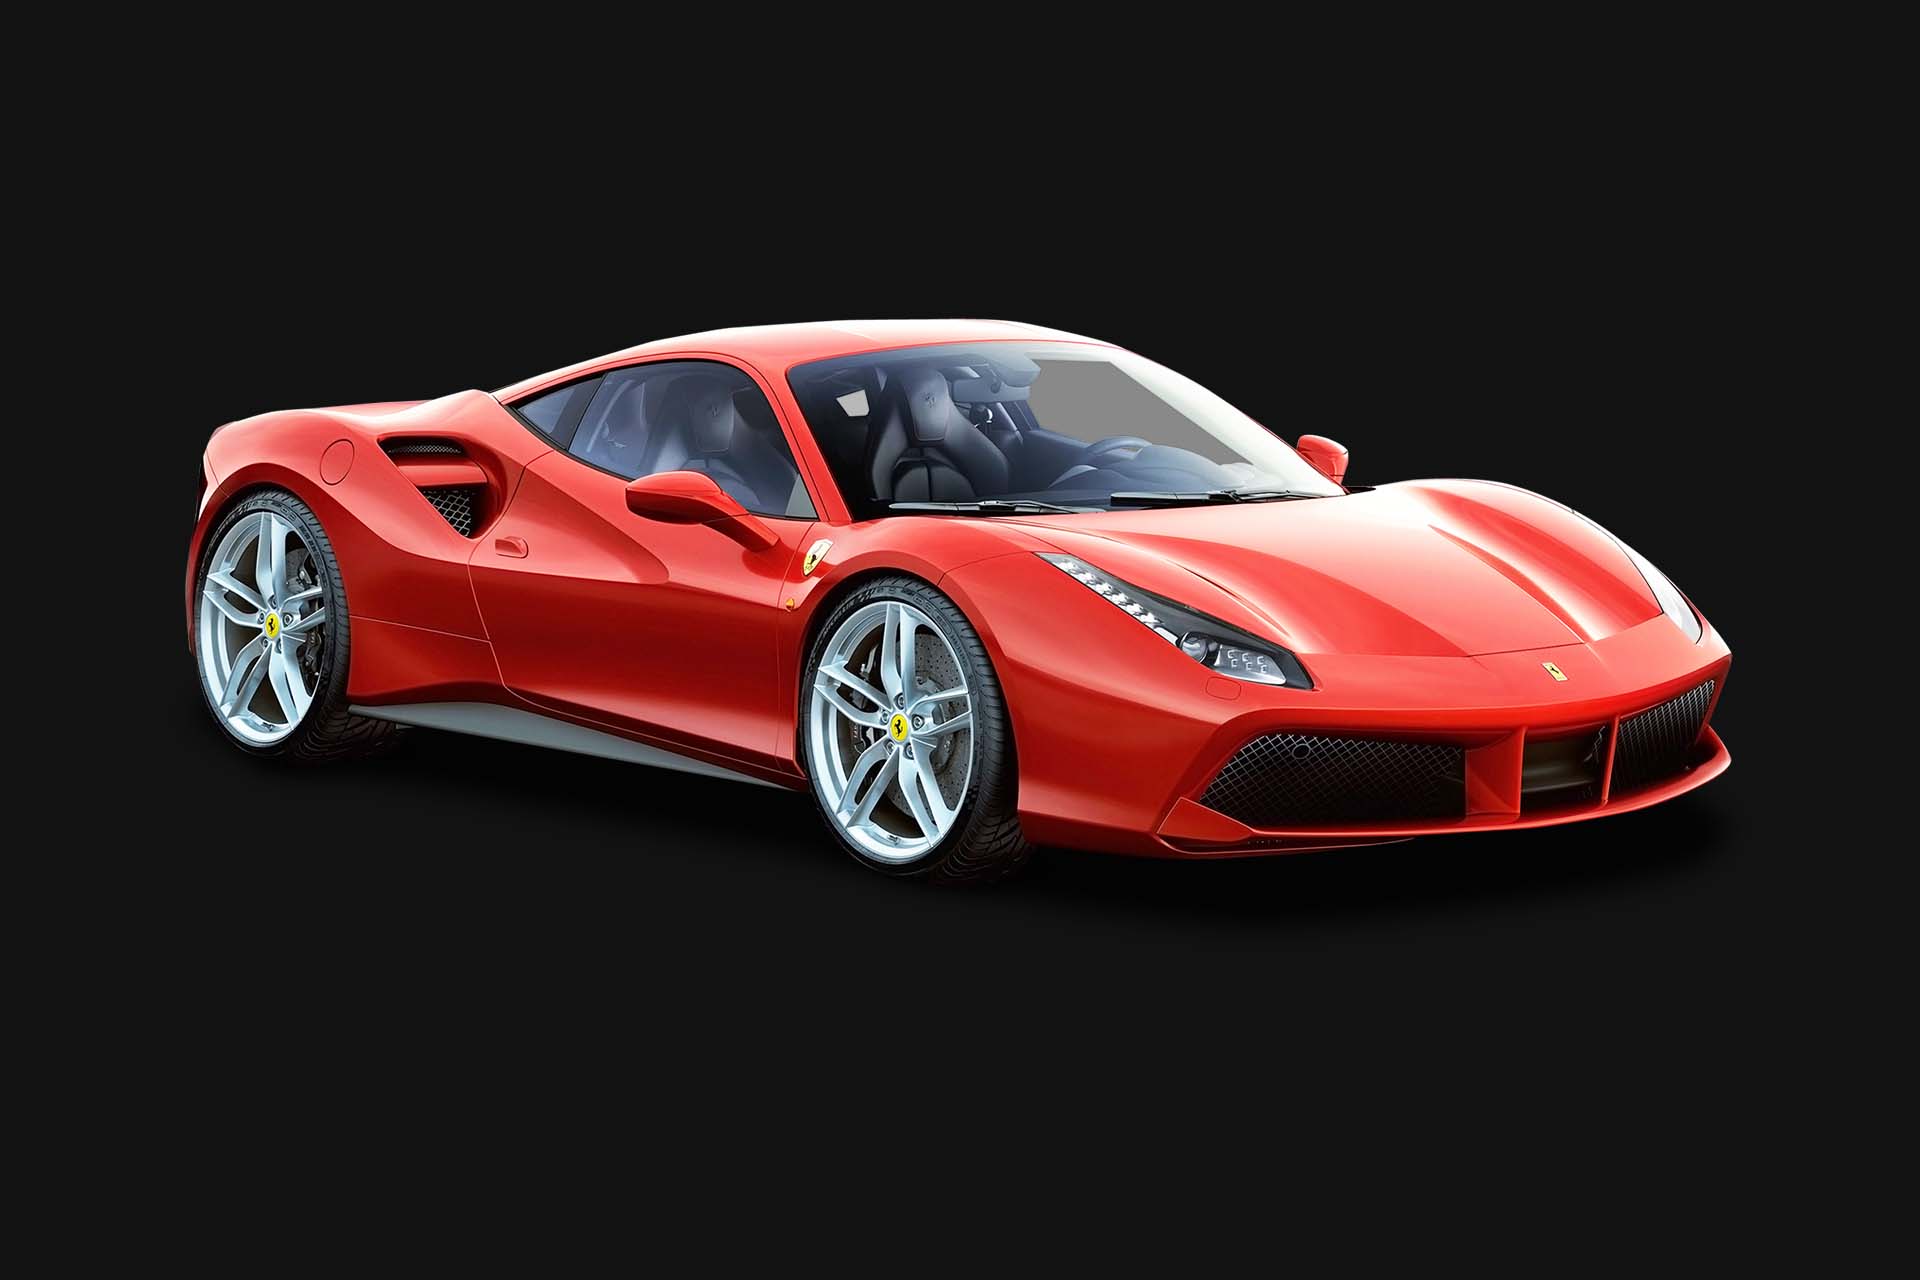 Red Ferrari sports car